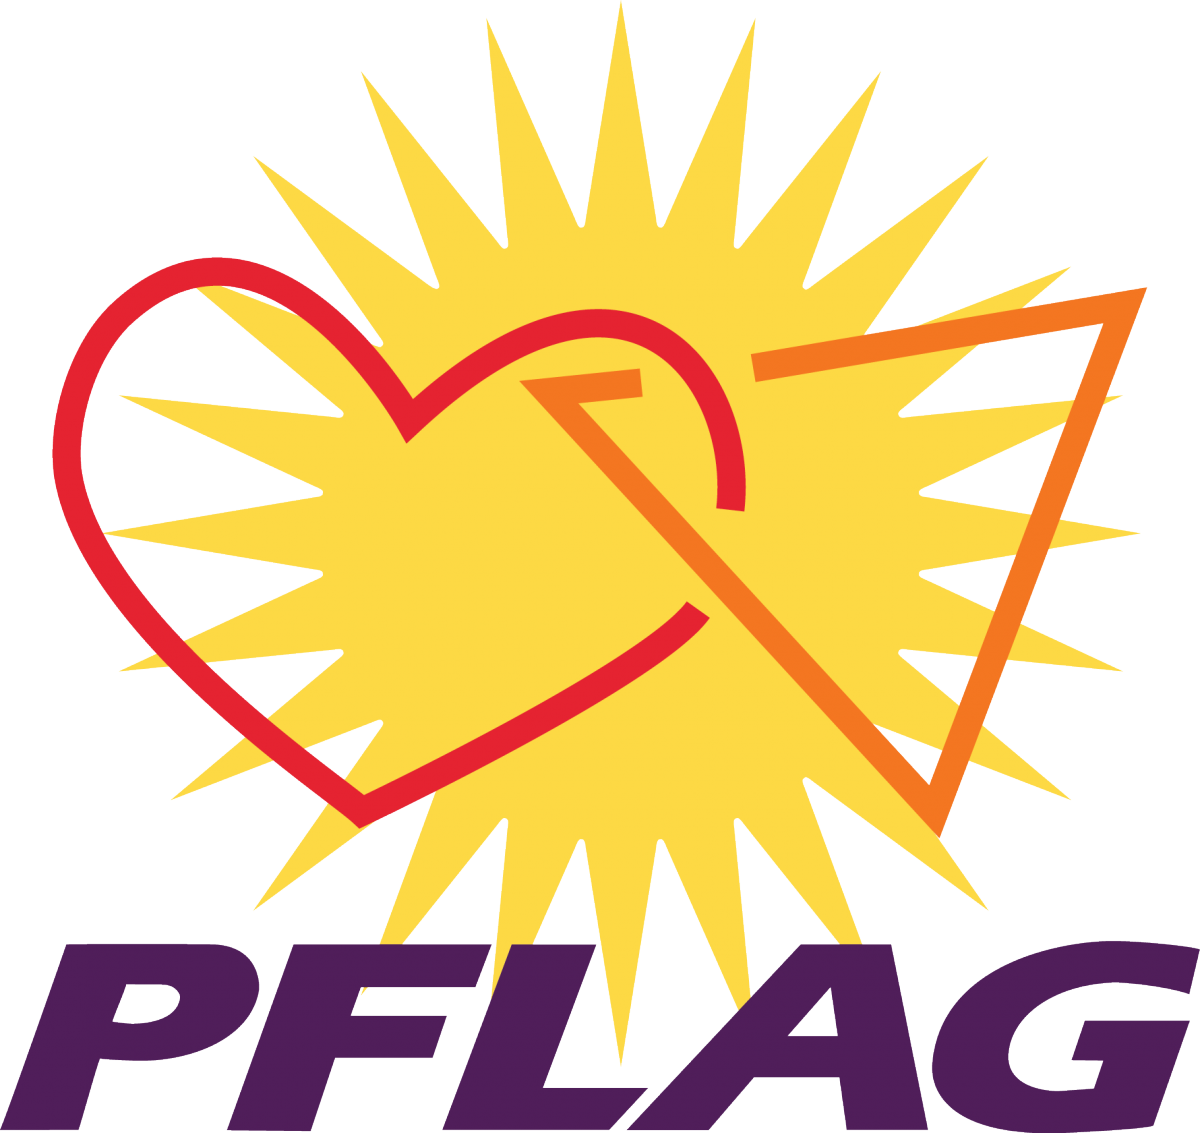 The PFLAG logo